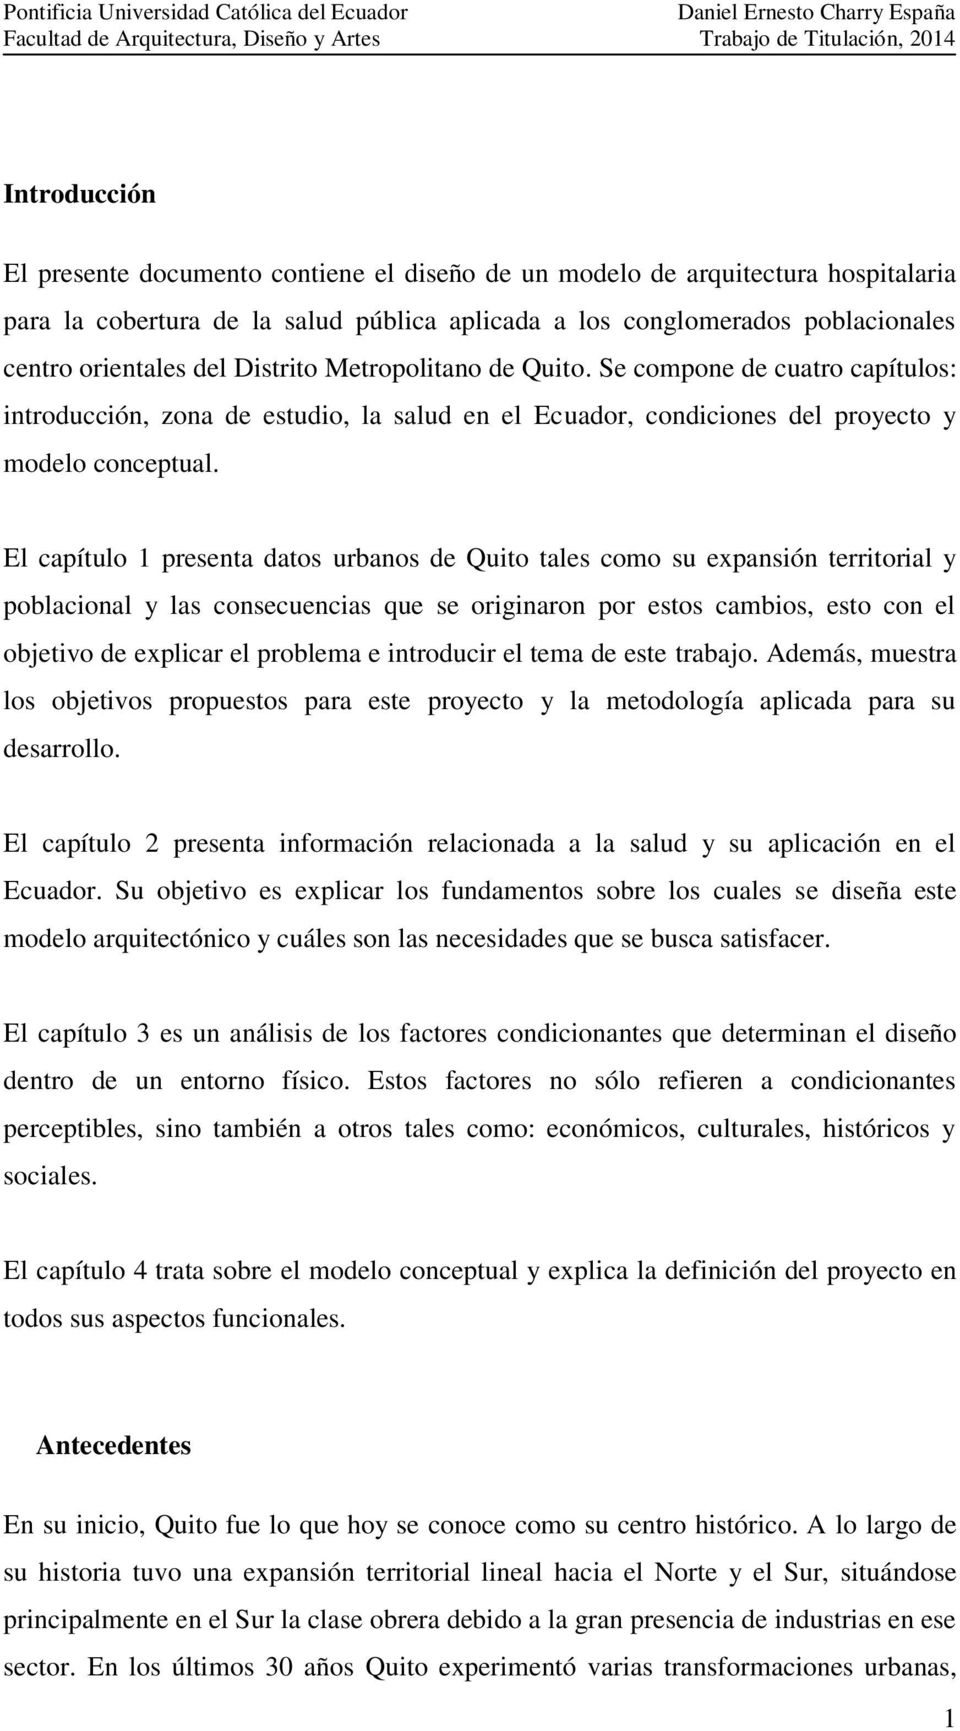 El capítulo 1 presenta datos urbanos de Quito tales como su expansión territorial y poblacional y las consecuencias que se originaron por estos cambios, esto con el objetivo de explicar el problema e